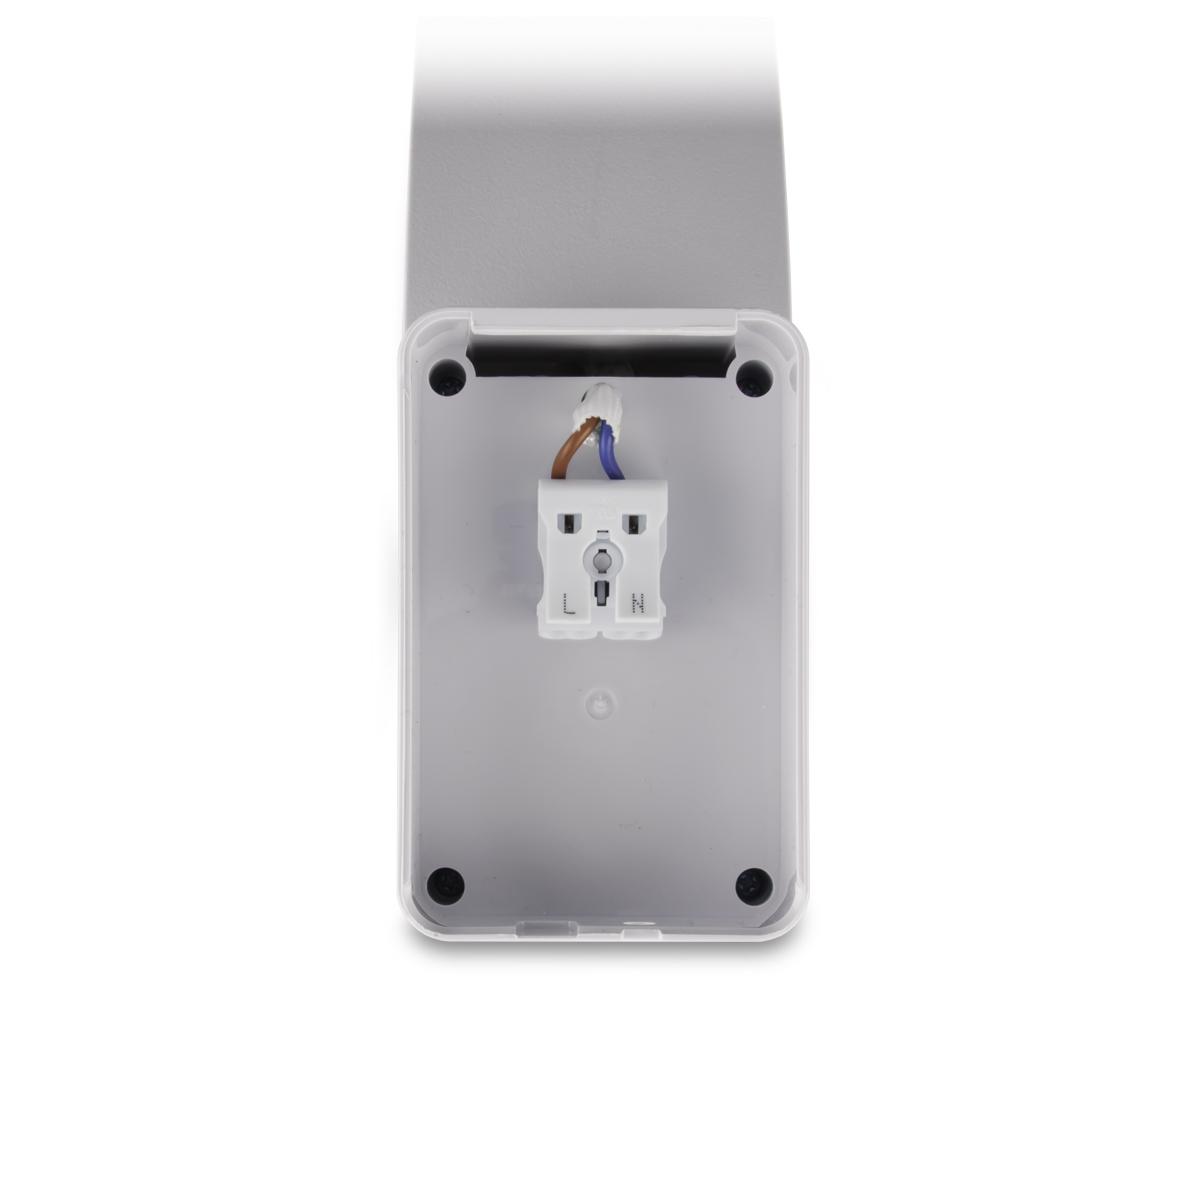 LED Wandleuchte Außenleuchte 15W neutralweiß IP54 - Ausführung: Weiß mit Sensor